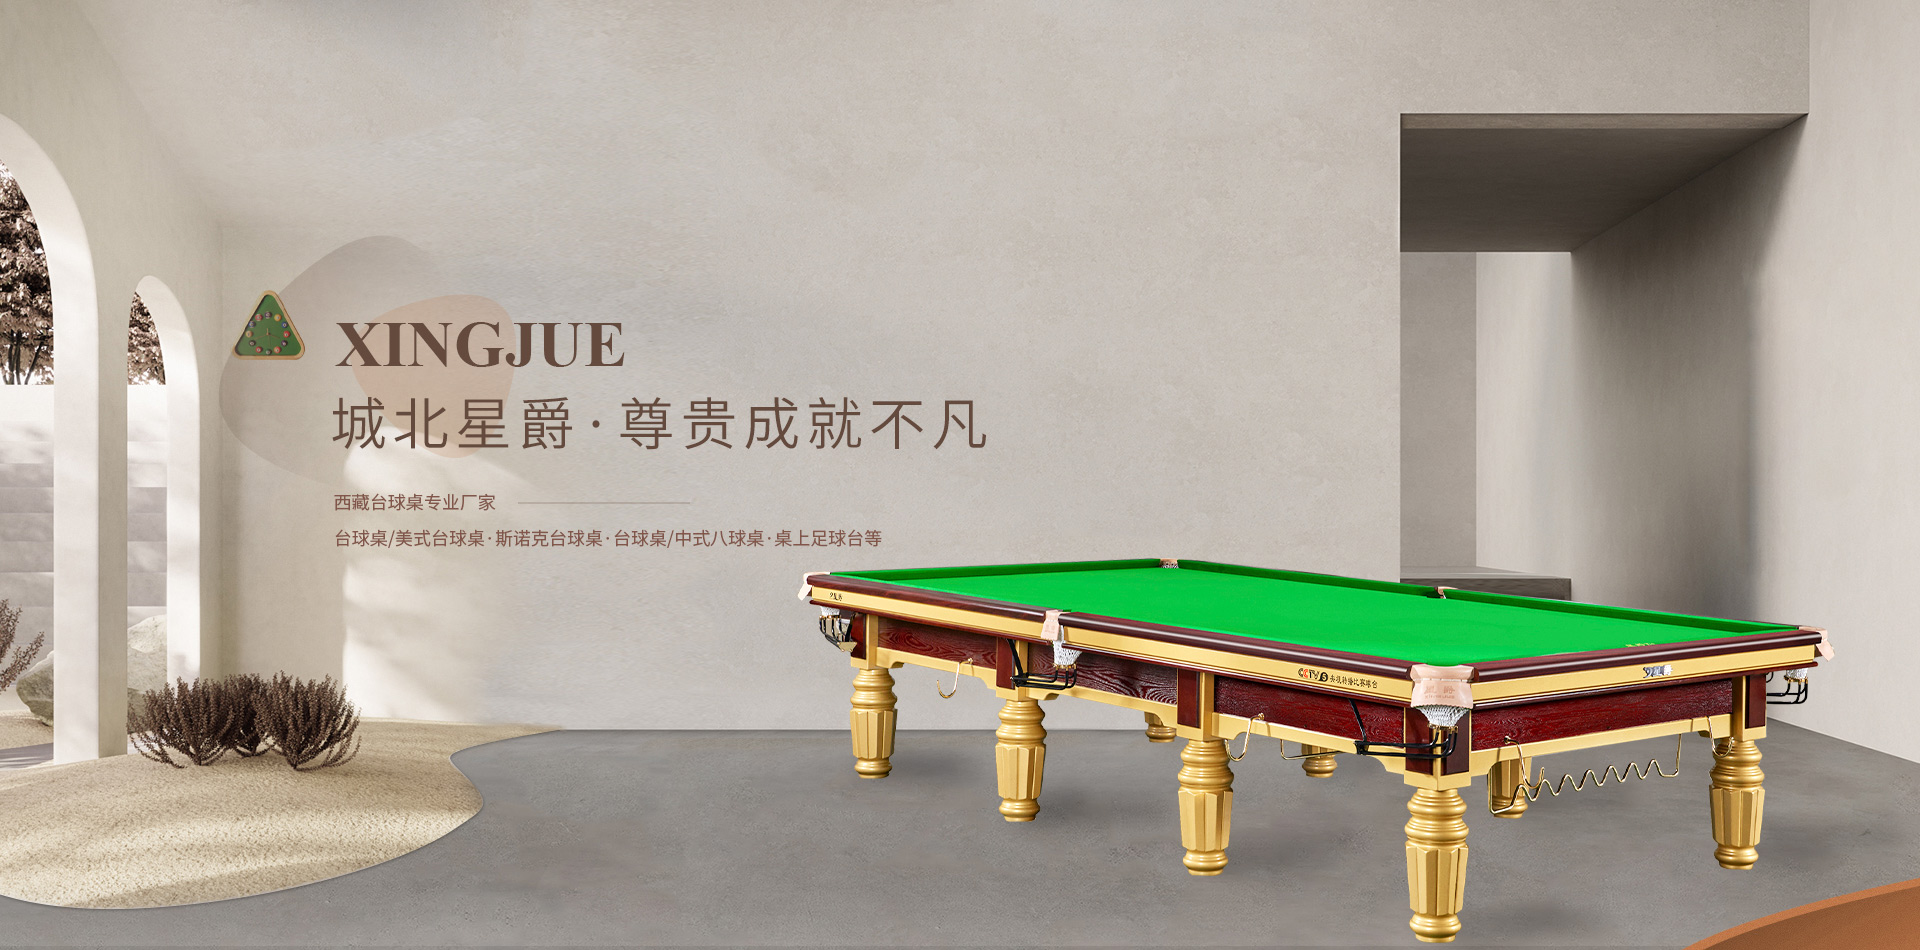 如果在西藏拉萨，台球桌维修找城北星爵台球桌专卖店，换新，维修随你选择！